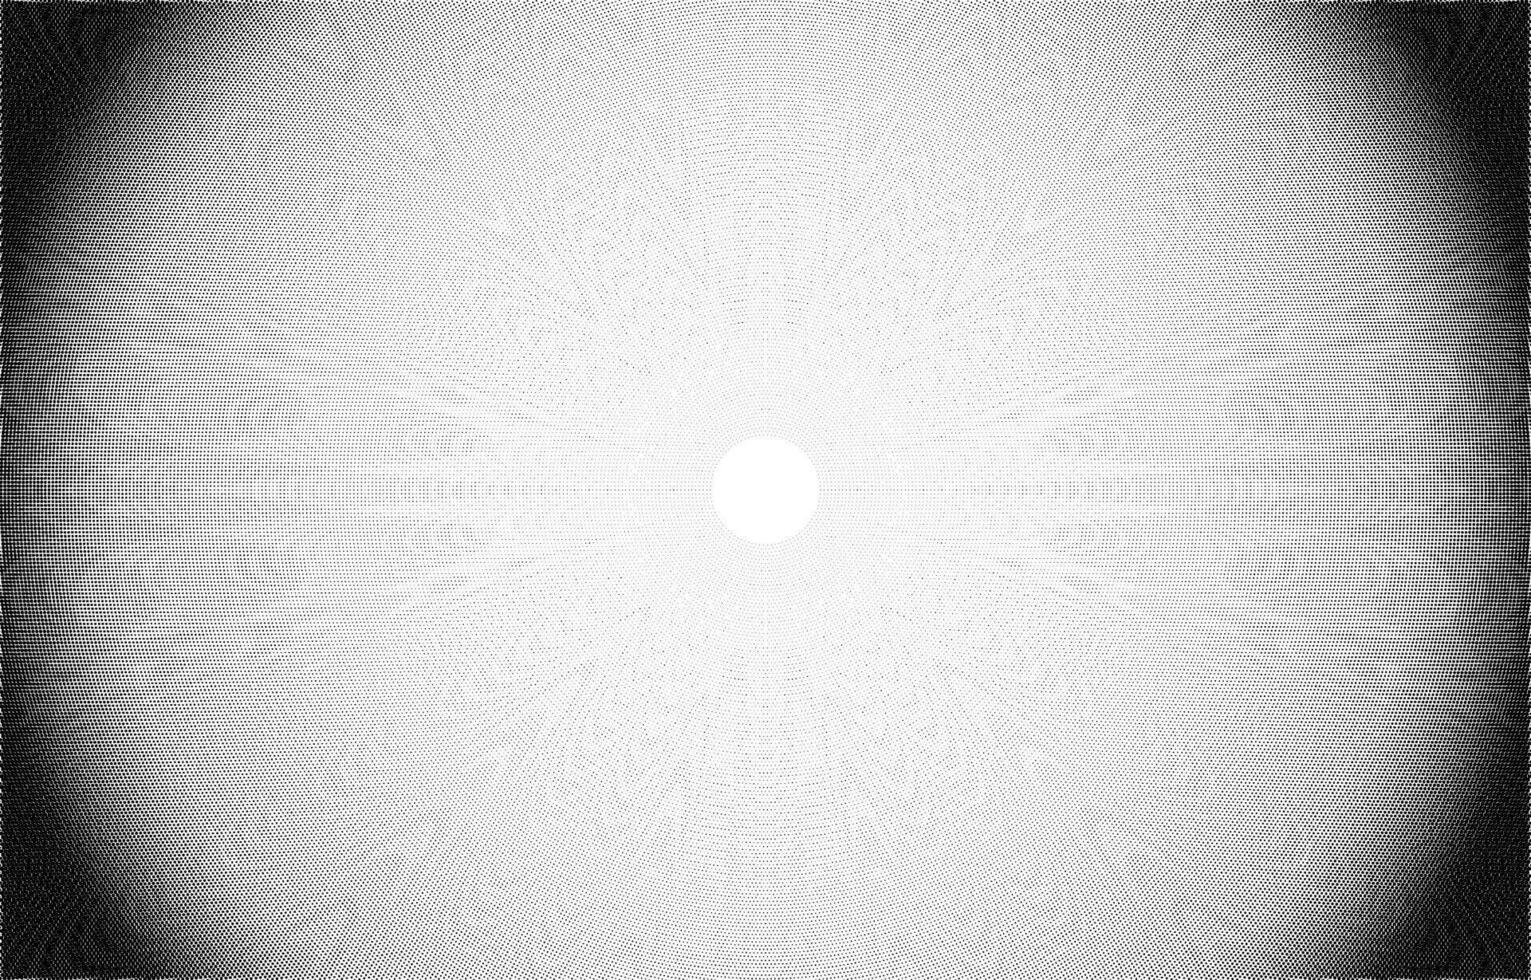 grynig ljud textur med en sand tycka om upplösa effekt, spannmål och punkt mönster. platt vektor illustration isolerat på vit bakgrund.